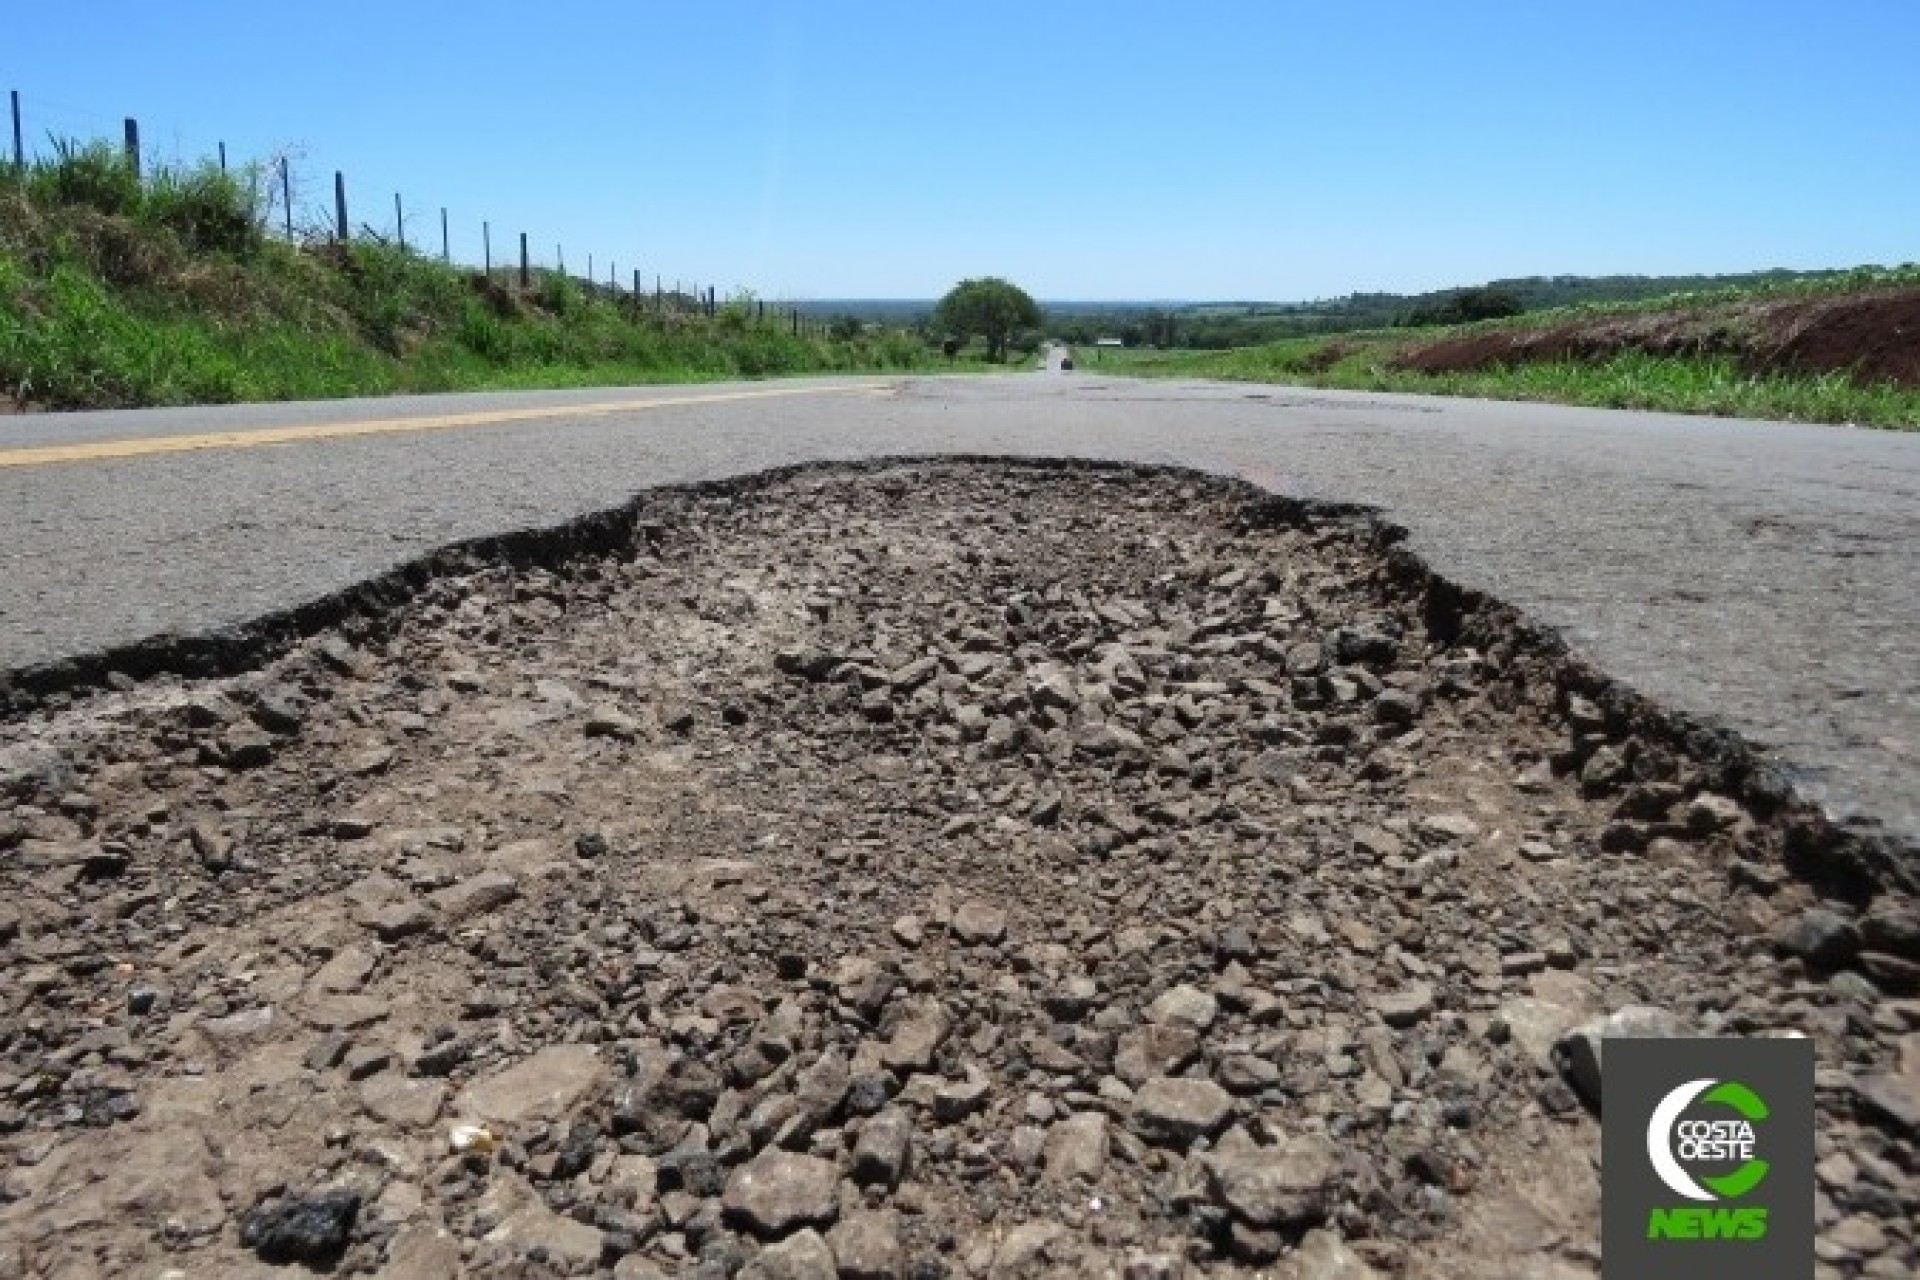 Rodovias que cruzam Santa Helena se tornaram intransitáveis e inseguras